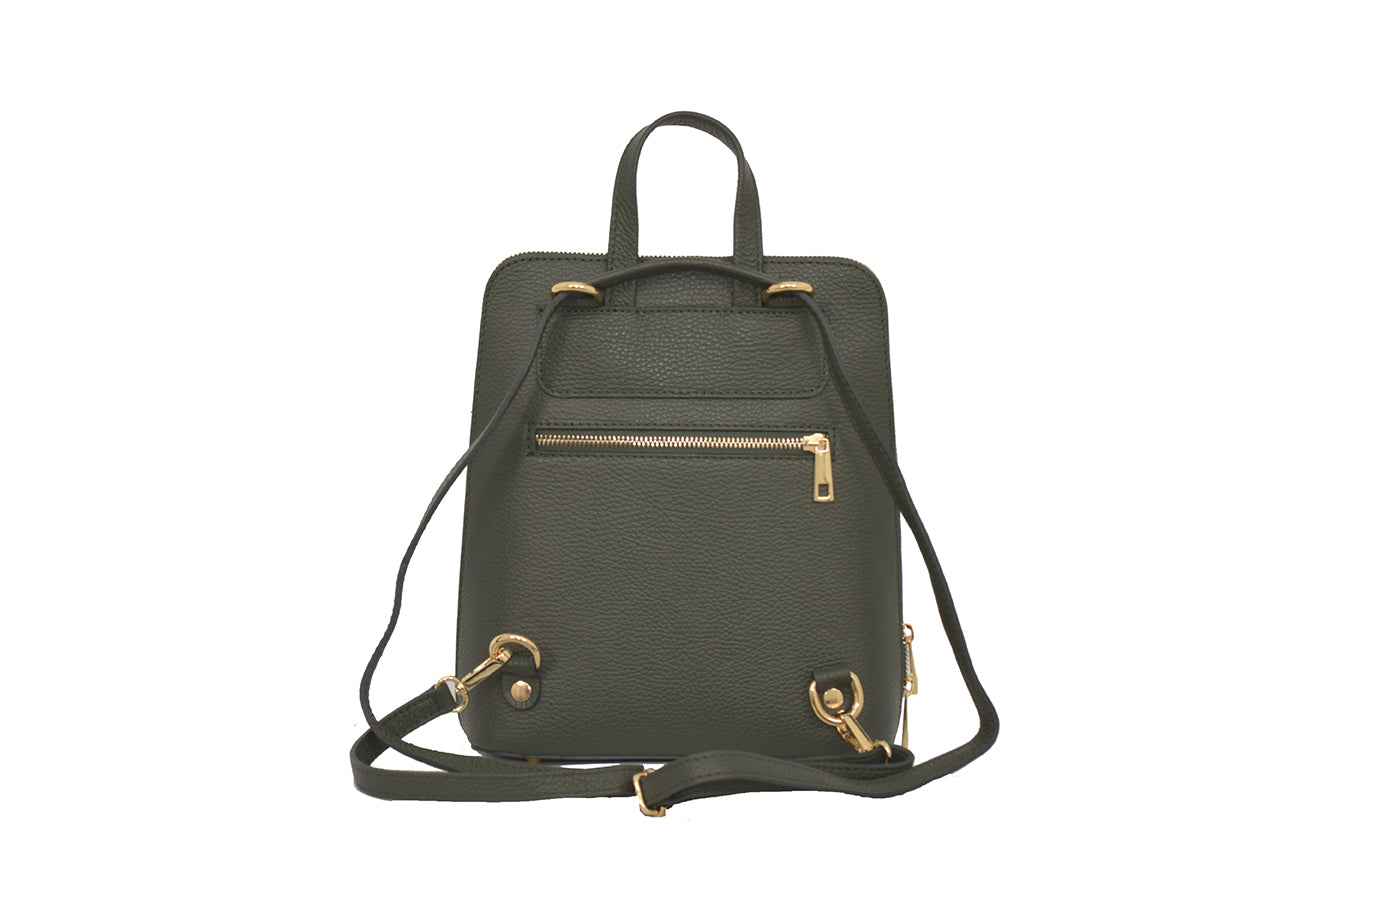 Buy/Send KLEIO Designer Backpack- Olive Green Online- FNP